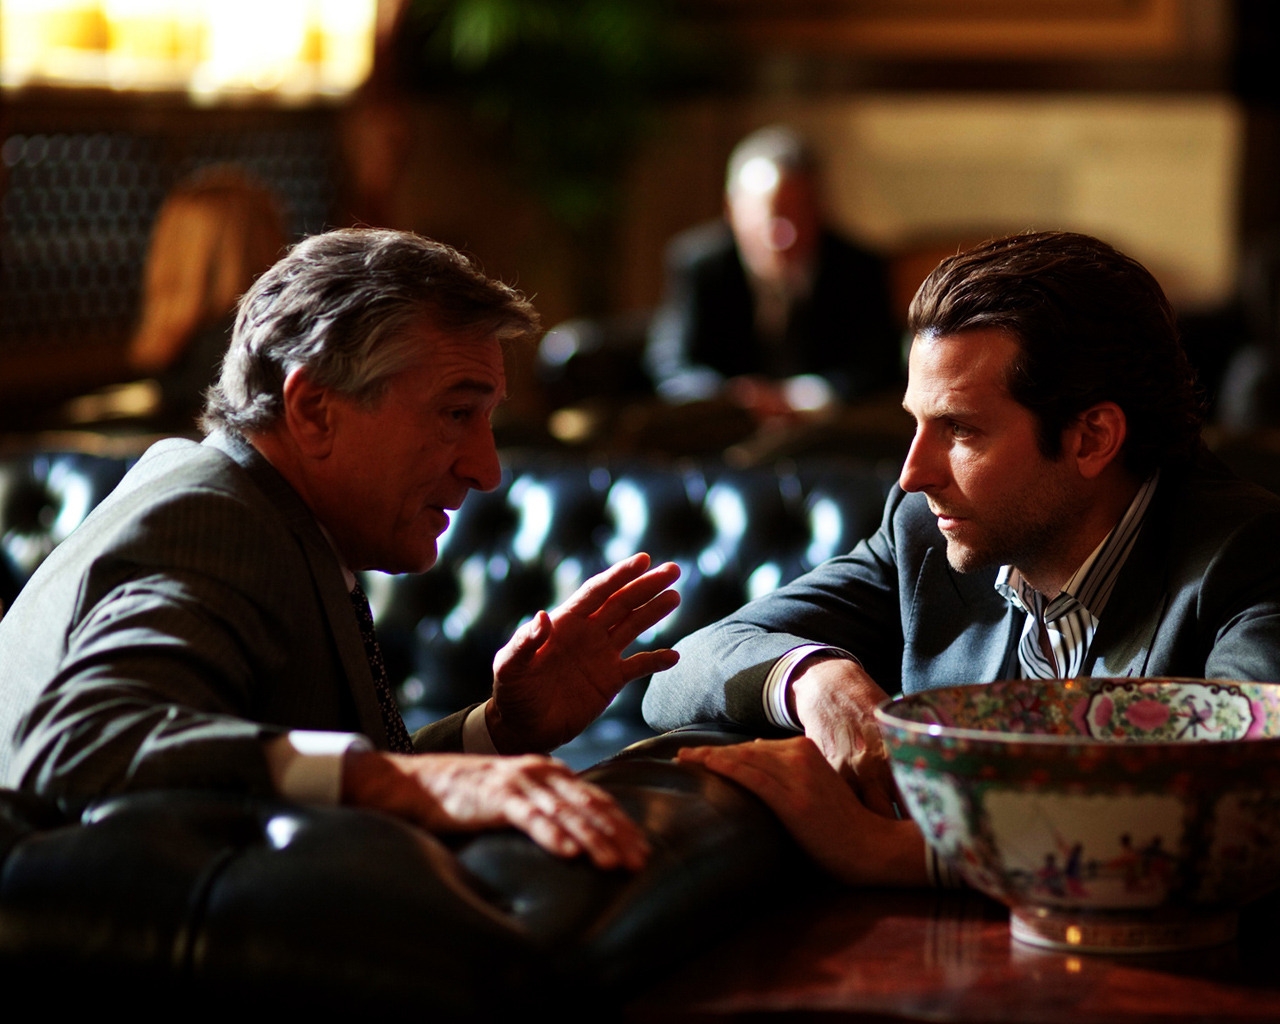 Bradley Cooper and Robert De Niro for 1280 x 1024 resolution